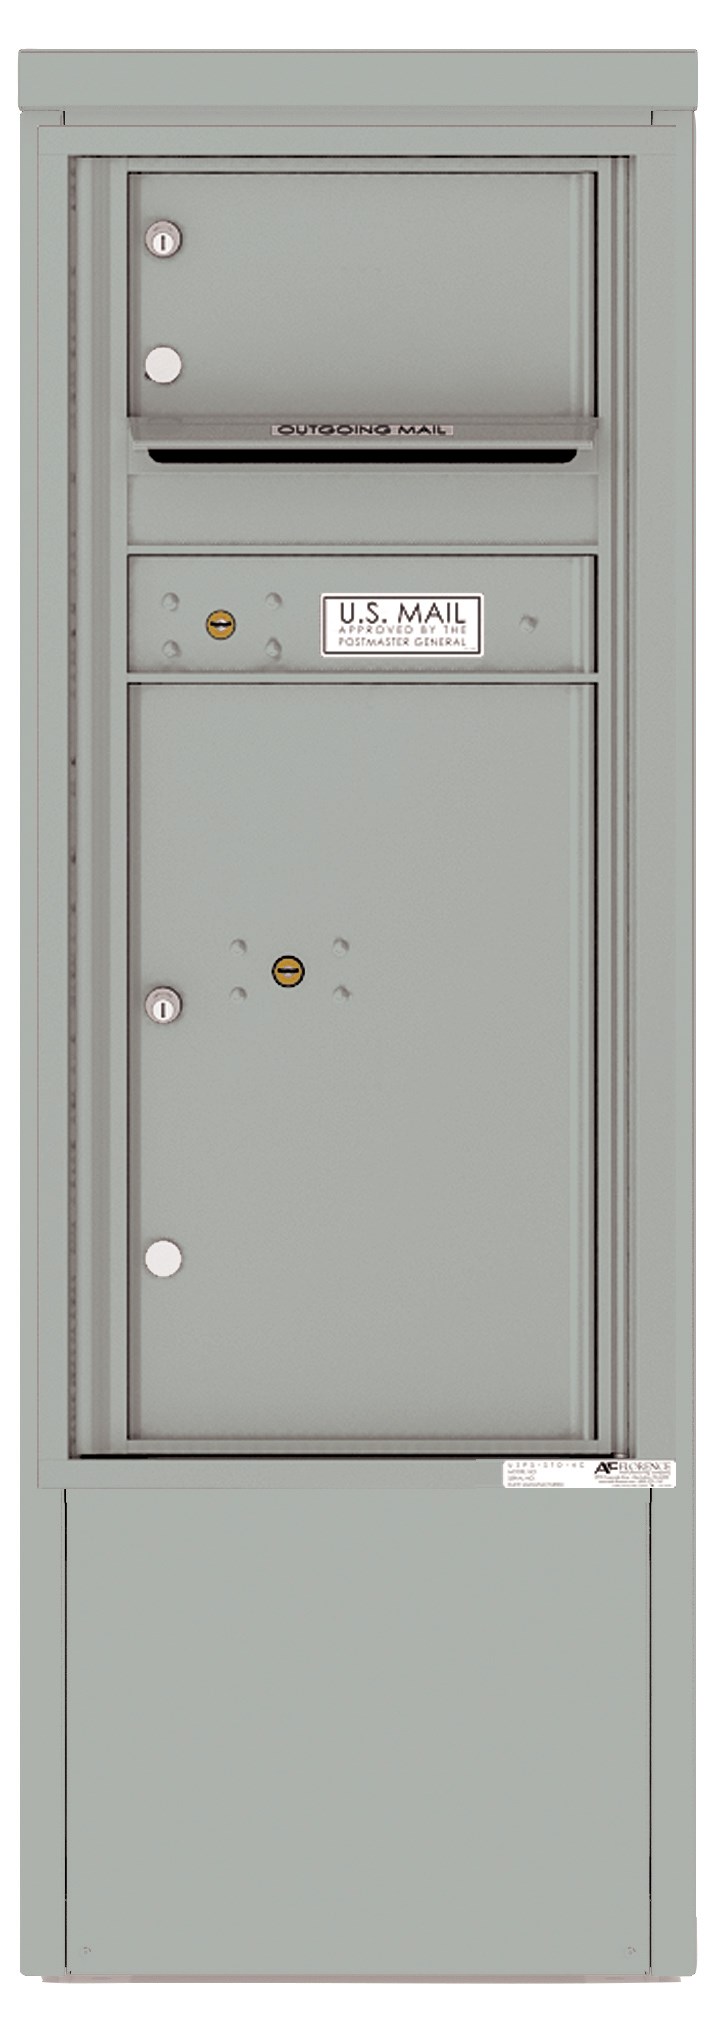 4CADS-01-D 4C Horizontal Depot Mailbox Silver Speck